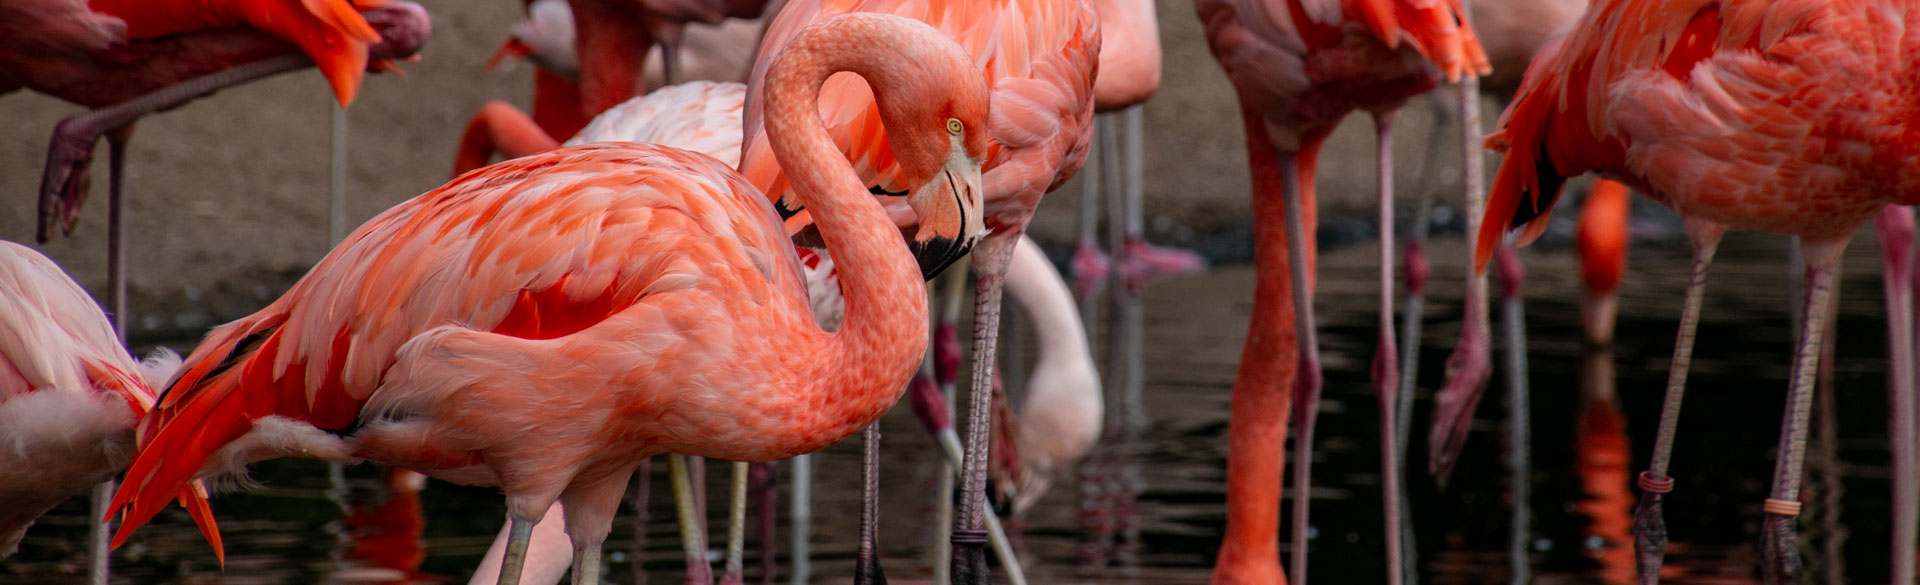 Fotografie Bildbearbeitung Flamingo